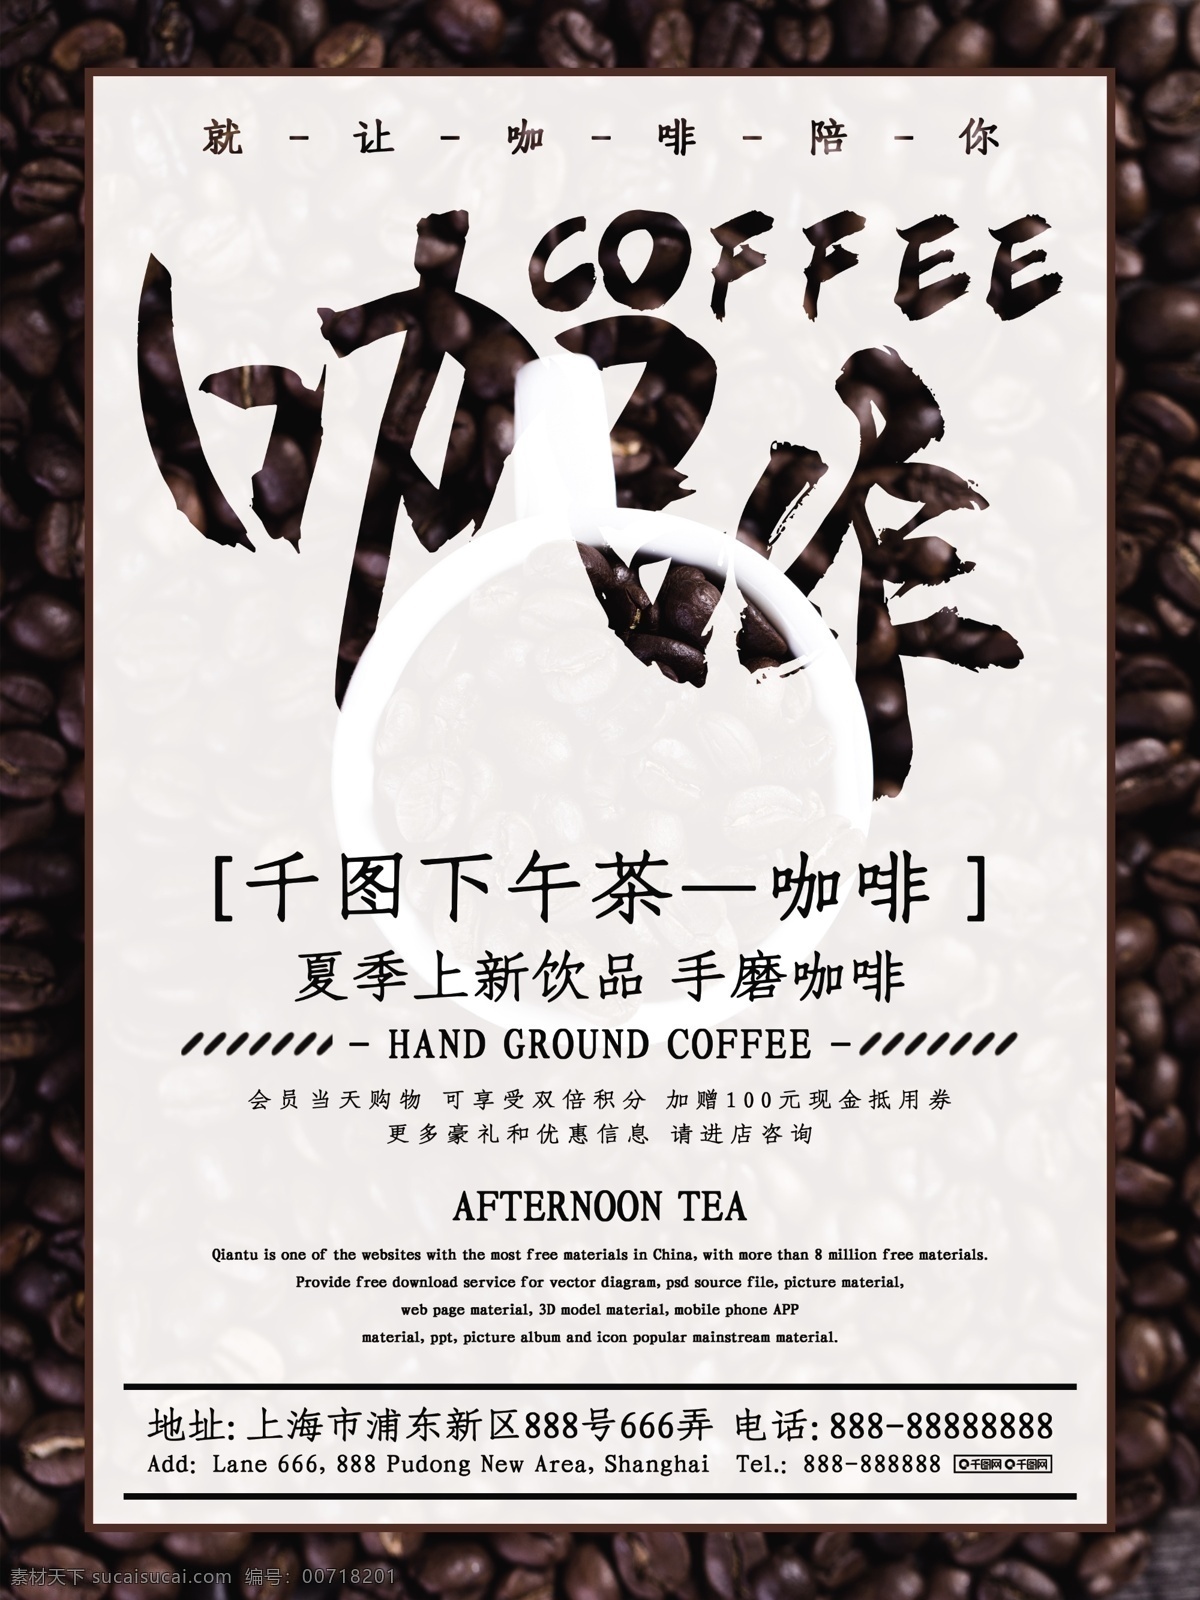 原创 简约 创意 咖啡 下午 茶 商业 宣传海报 下午茶 手磨咖啡 宣传 优惠 促销 海报 源文件